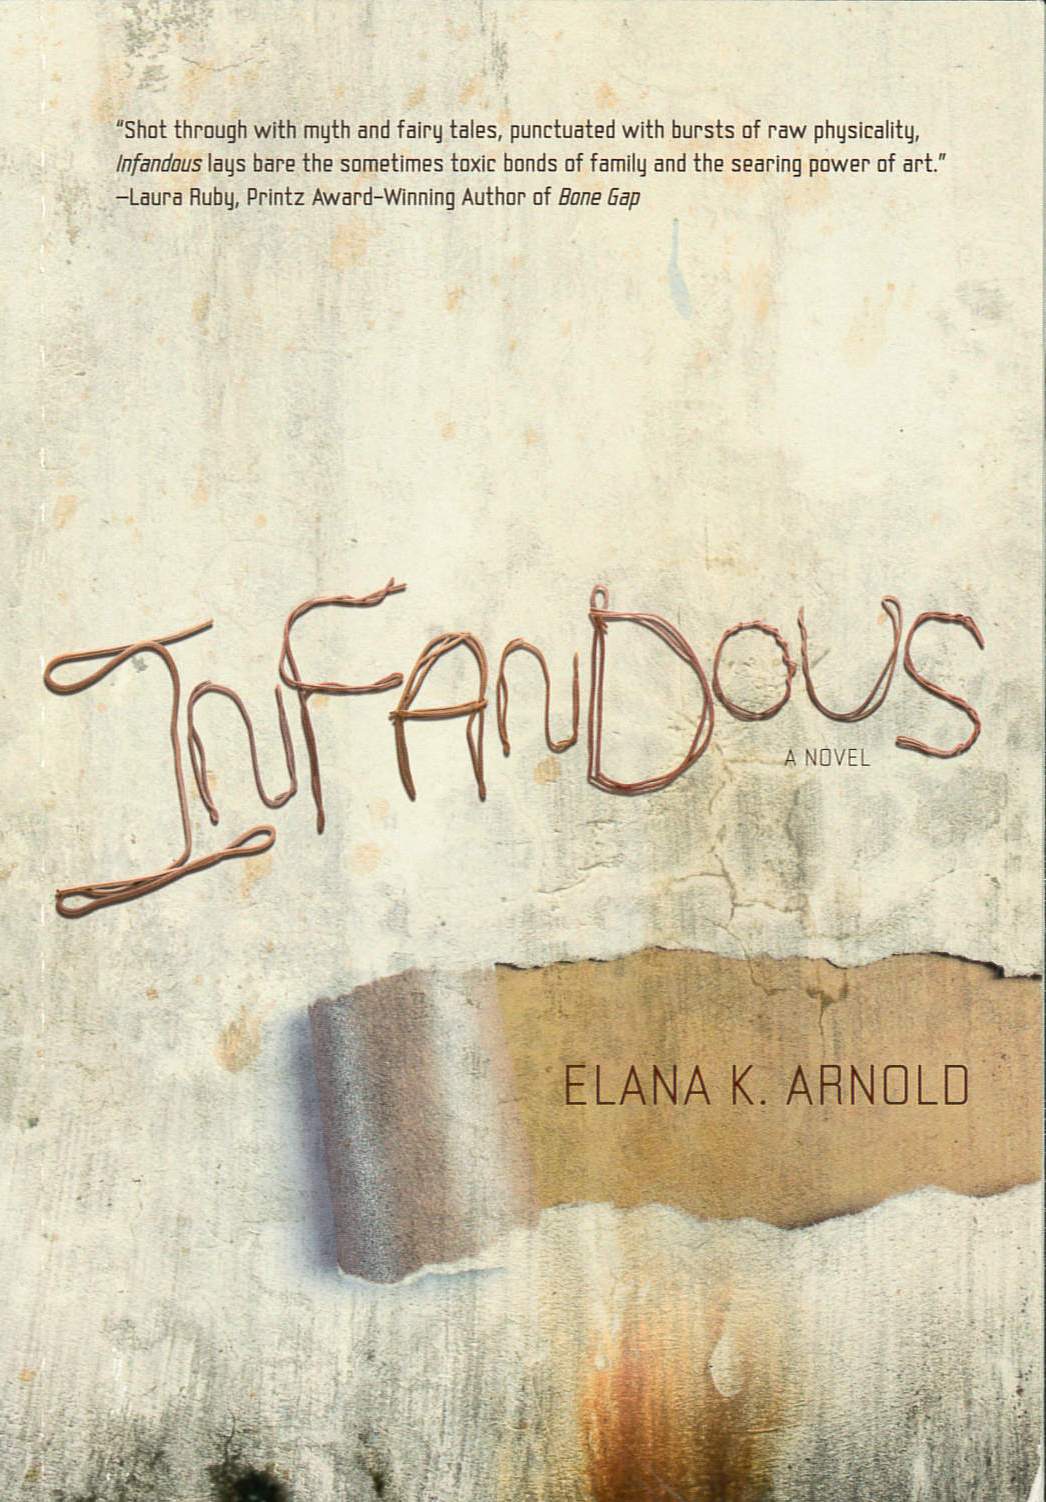 Infandous /